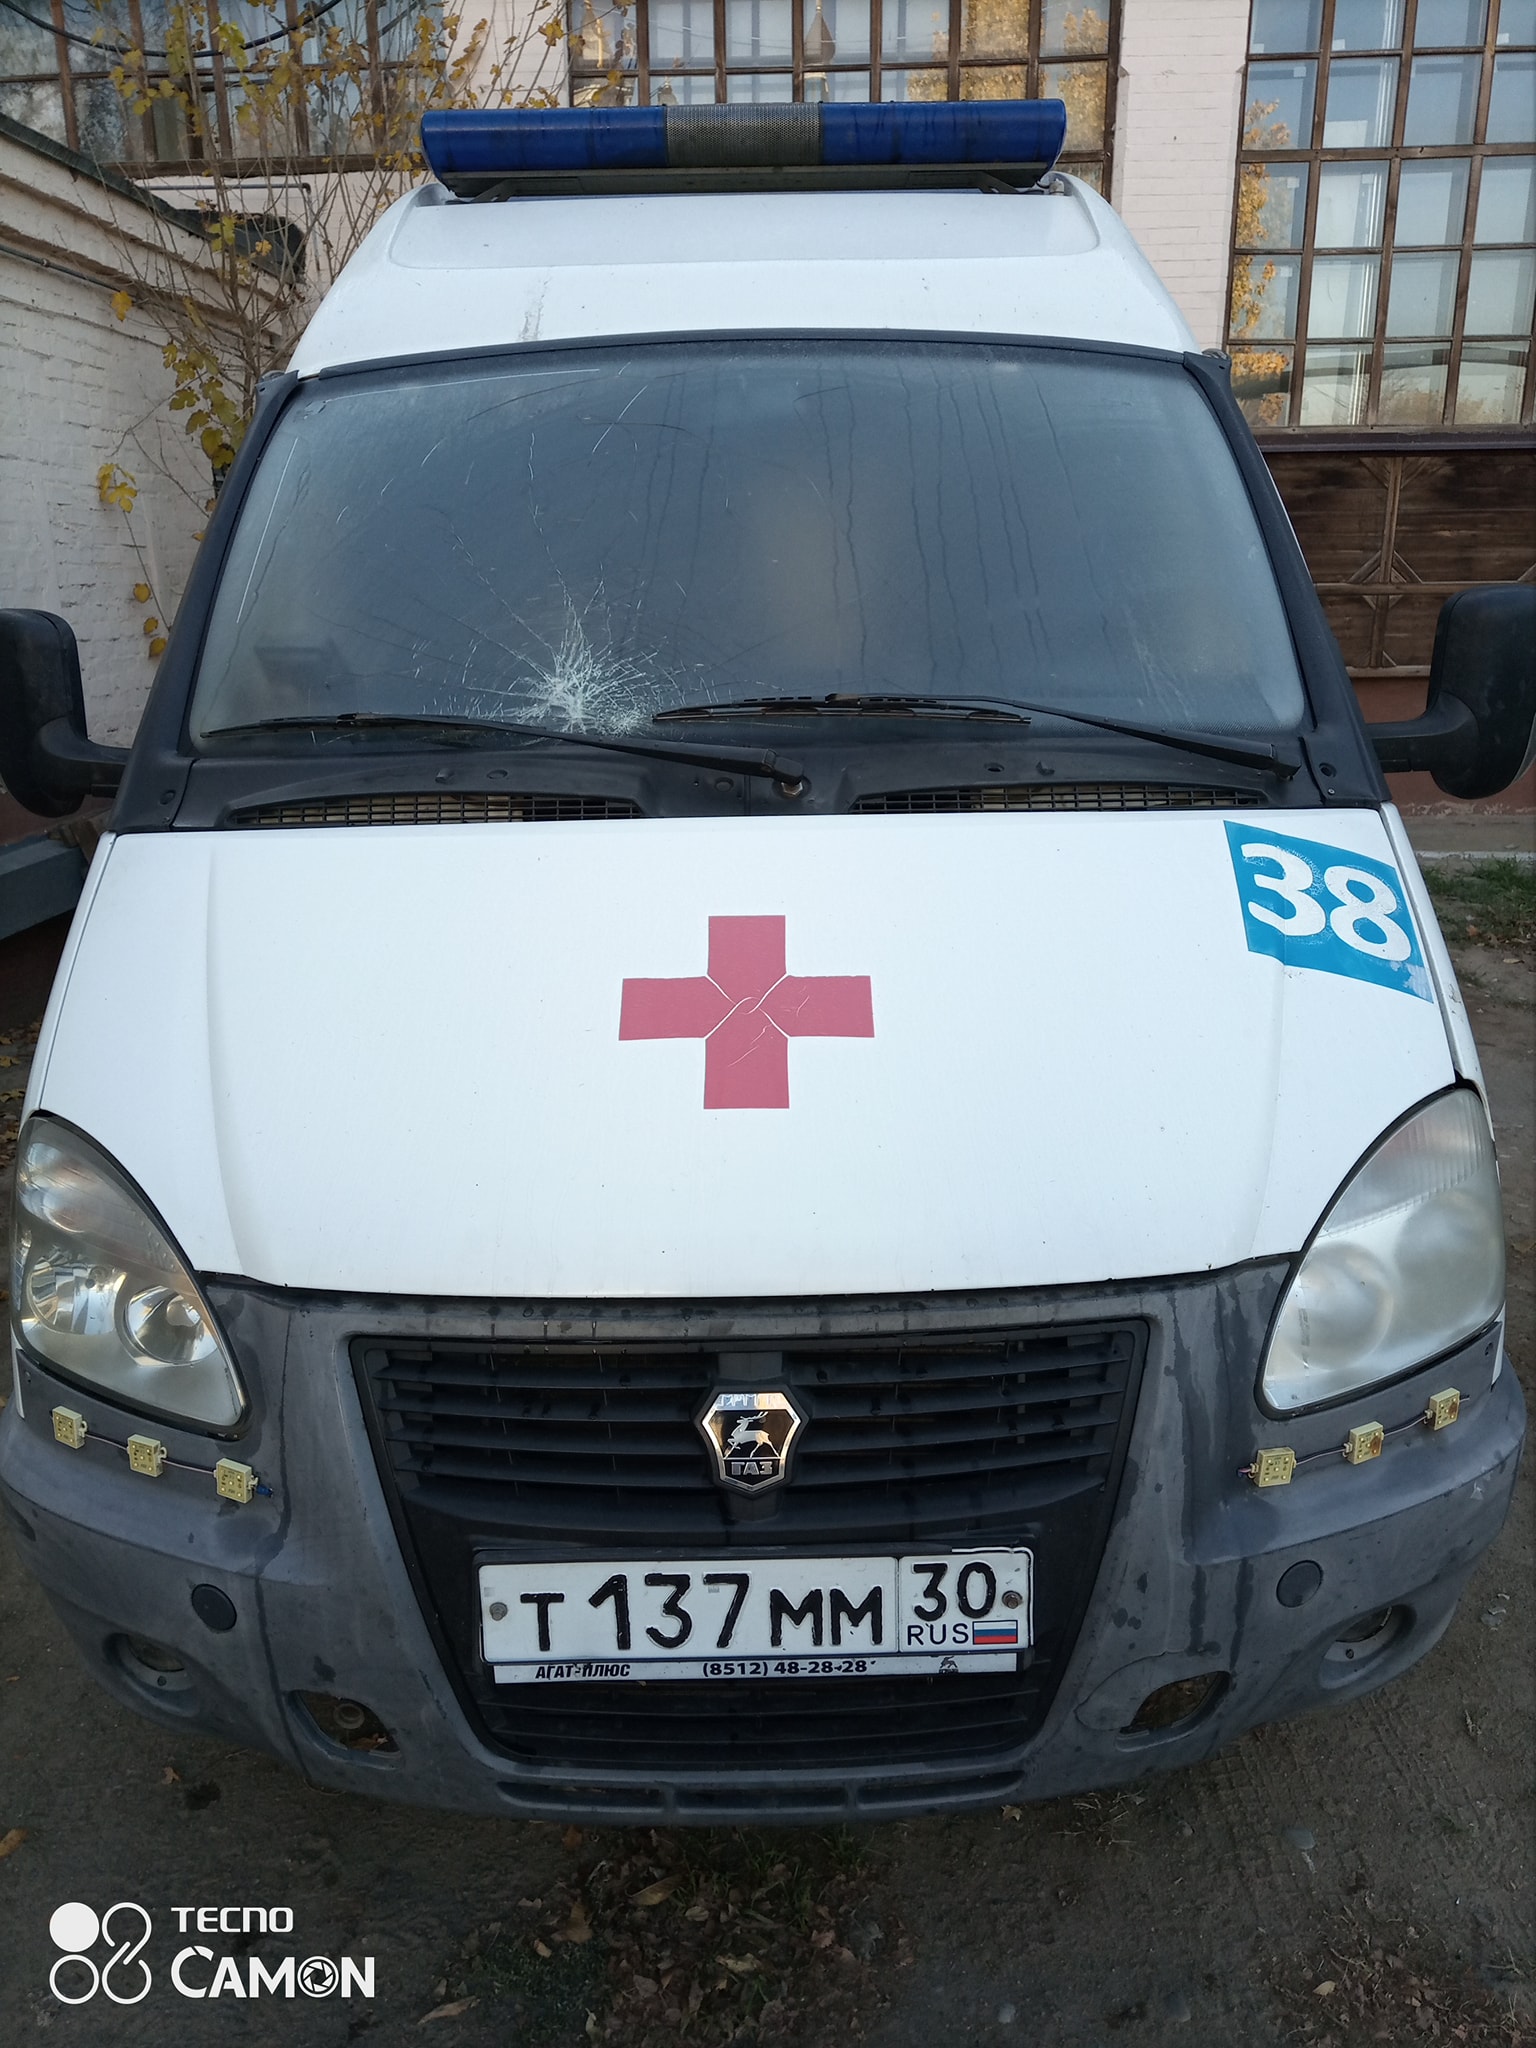 Нападение на бригаду скорой помощи в Астрахани